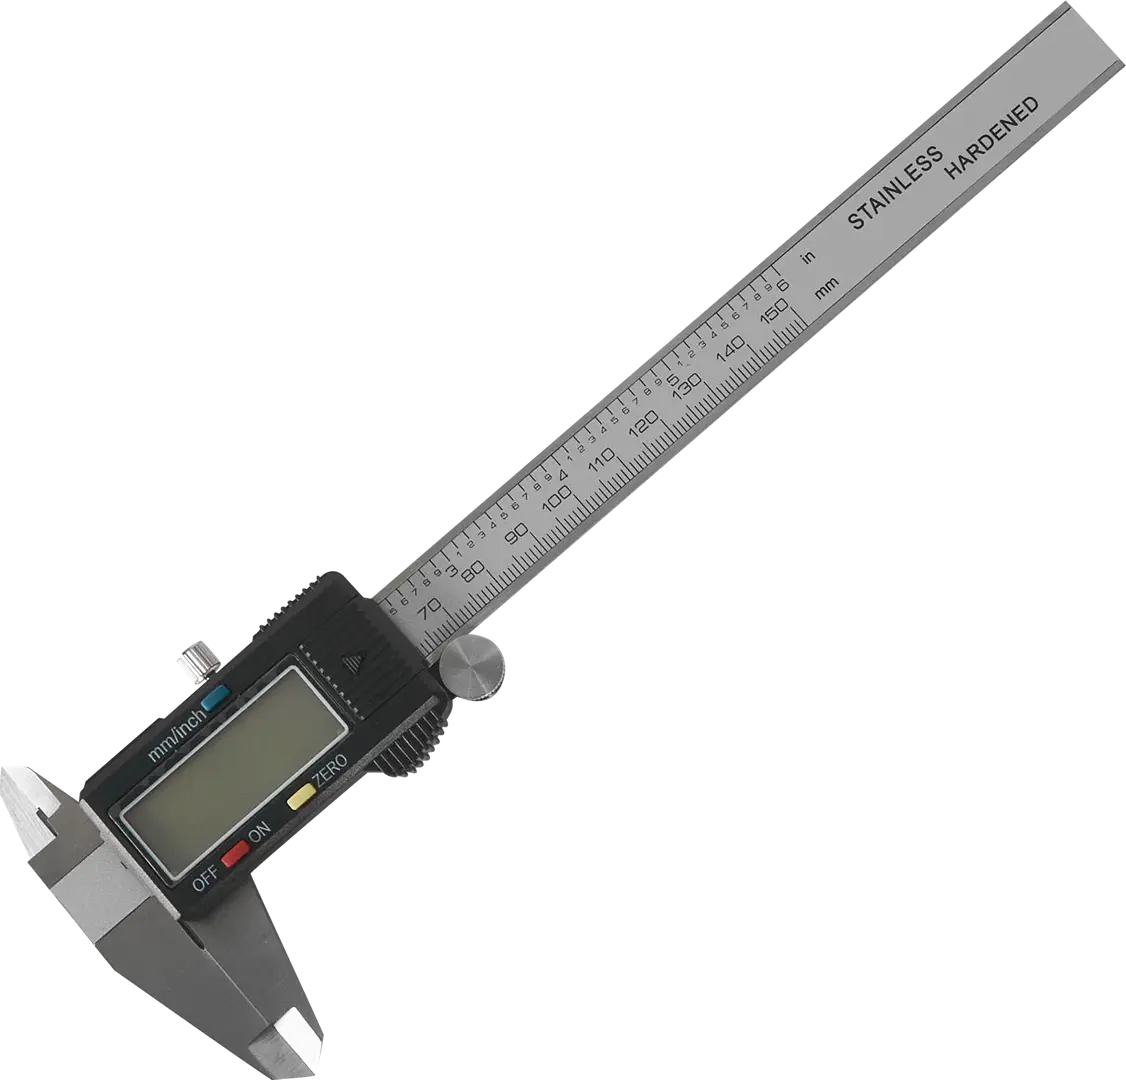 Штангенциркуль цифровой 150 мм, точность до 0,02 мм цифровой штангенциркуль bestseller измерительный инструмент электронный точность 0 1 мм